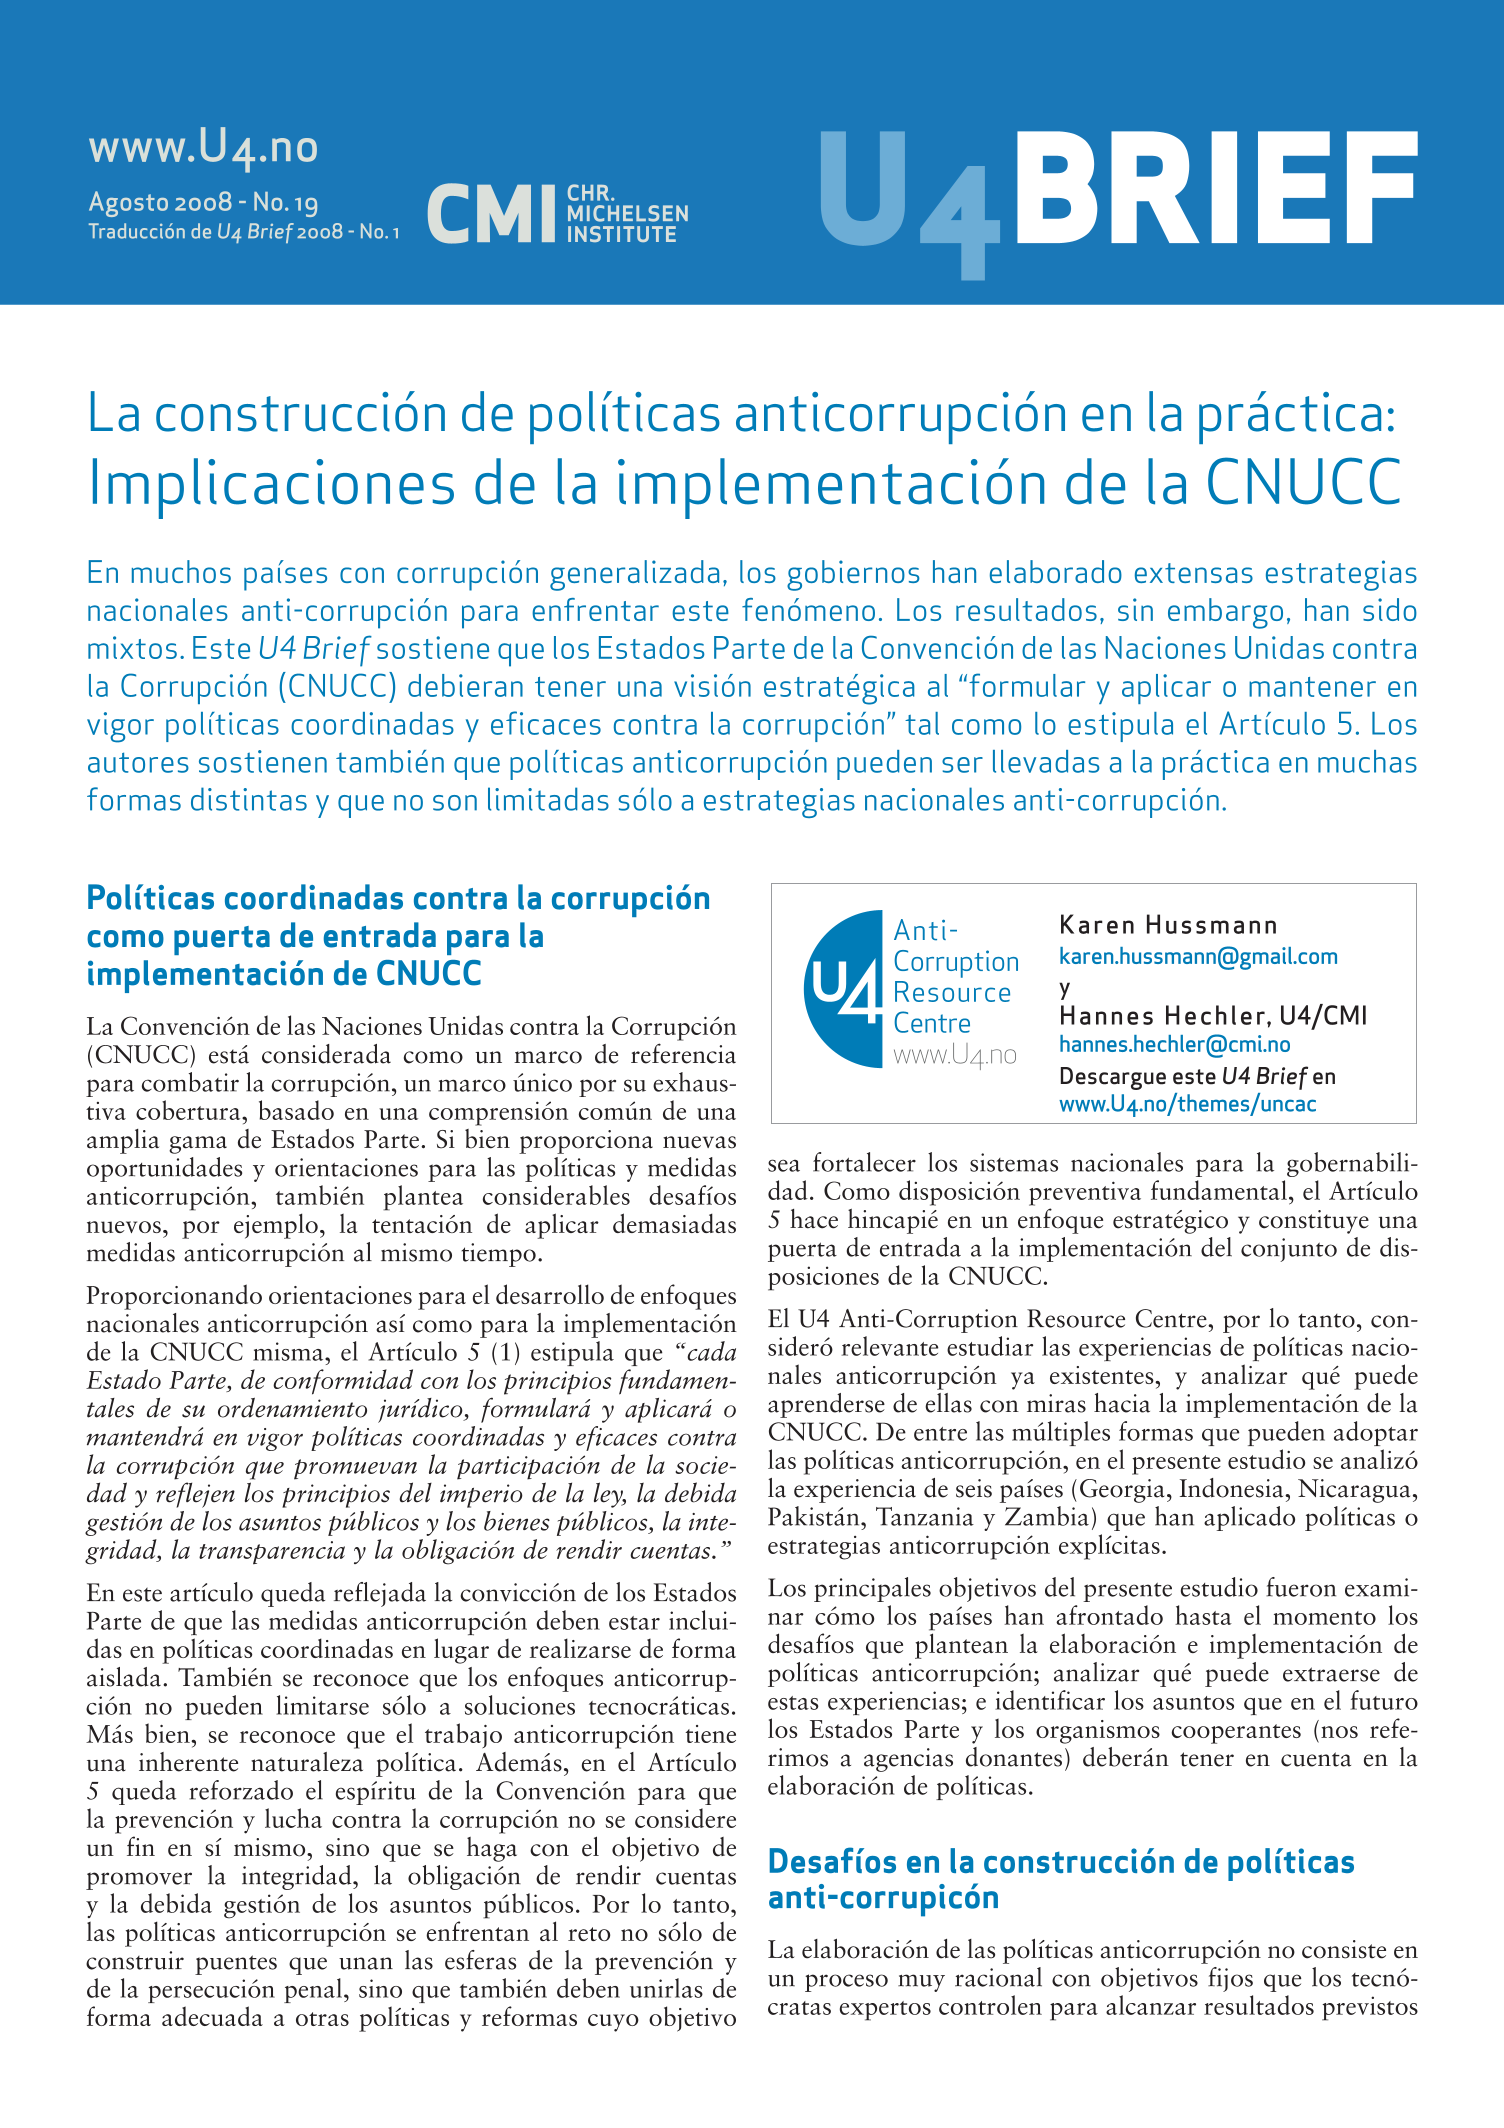 La Construcción de Políticas Anticorrupción en la Práctica: Implicaciones de la Implementación de la CNUCC